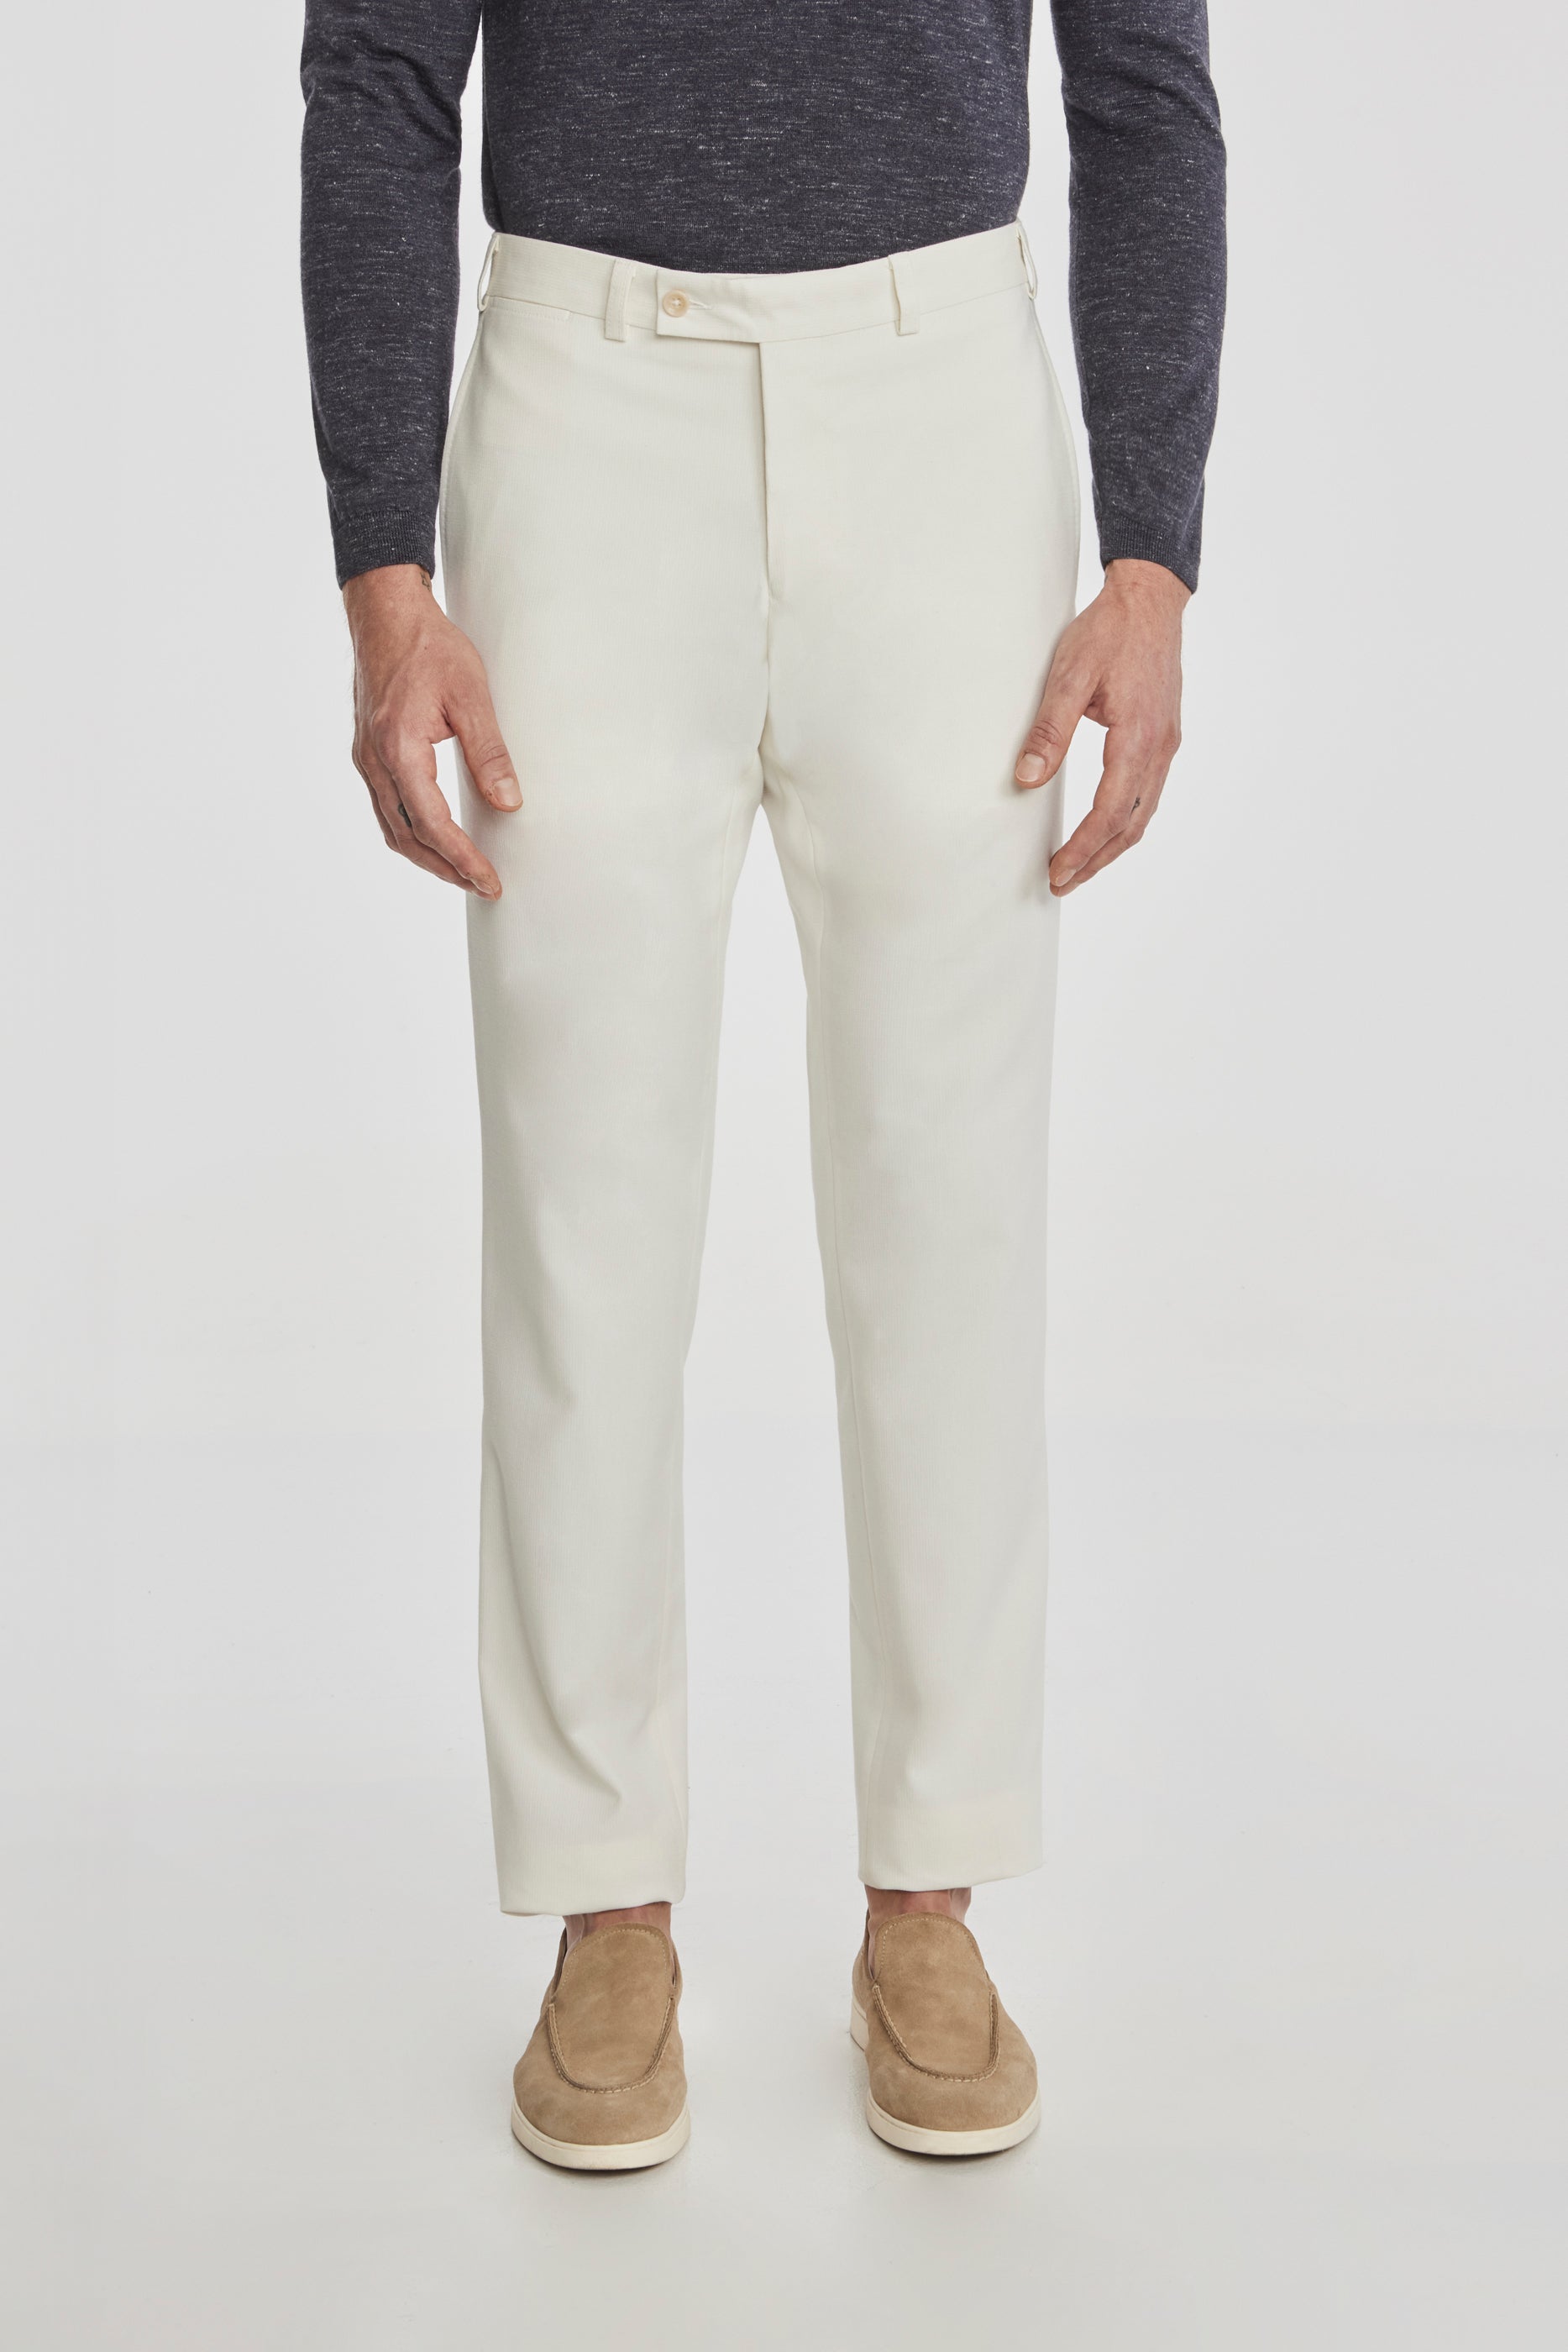 Vue alternative Palmer pantalon en coton texturé et laine stretch en écru